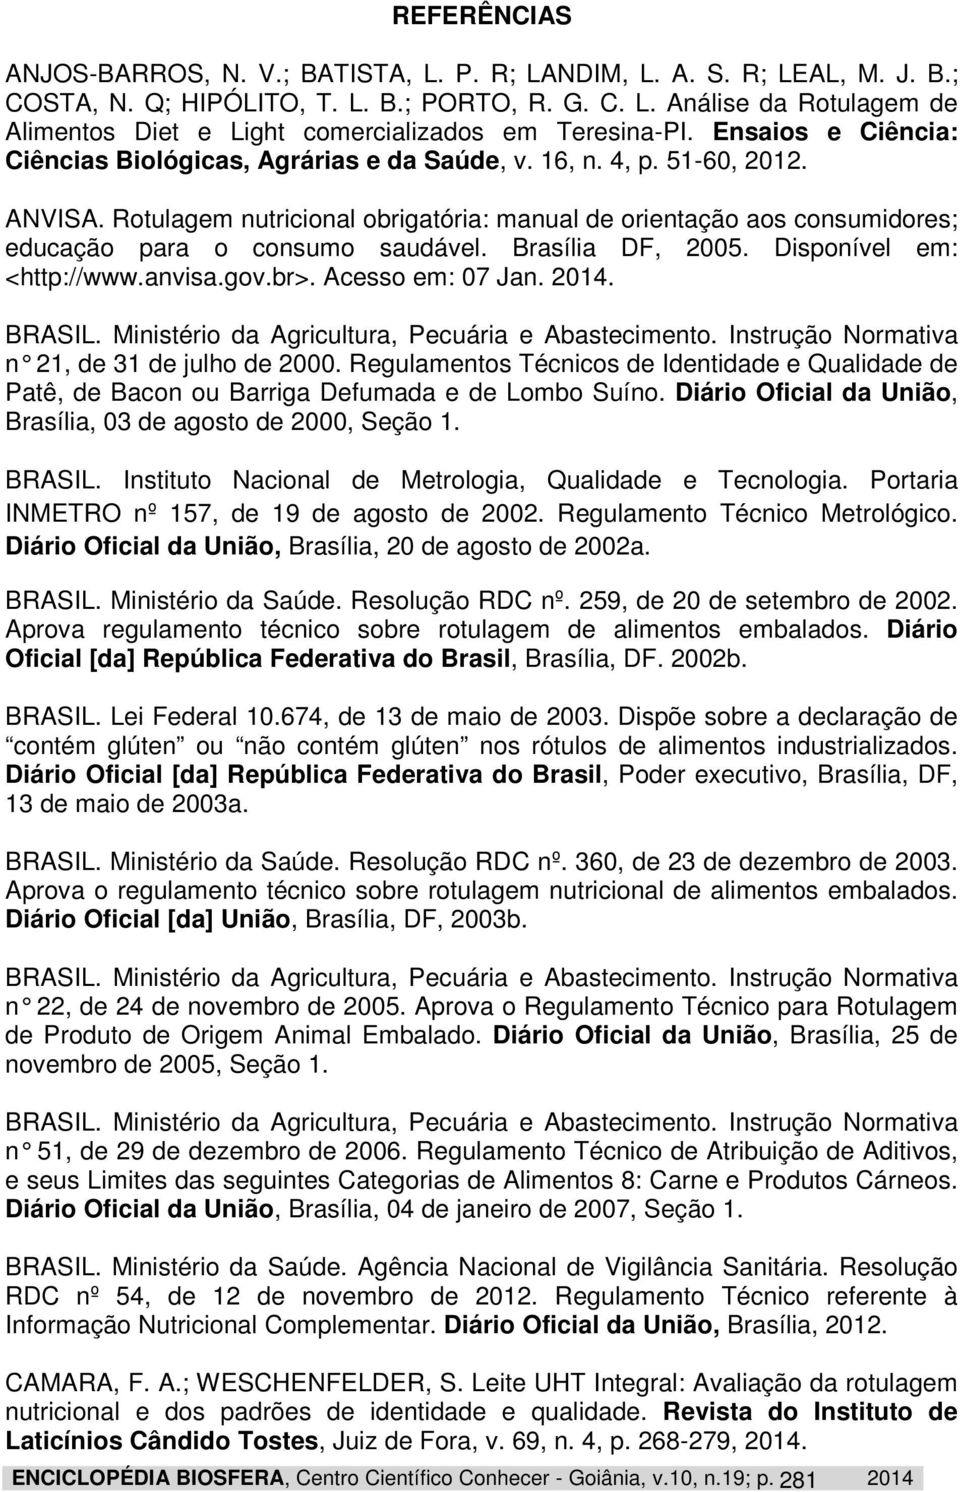 Rotulagem nutricional obrigatória: manual de orientação aos consumidores; educação para o consumo saudável. Brasília DF, 2005. Disponível em: <http://www.anvisa.gov.br>. Acesso em: 07 Jan. 2014.